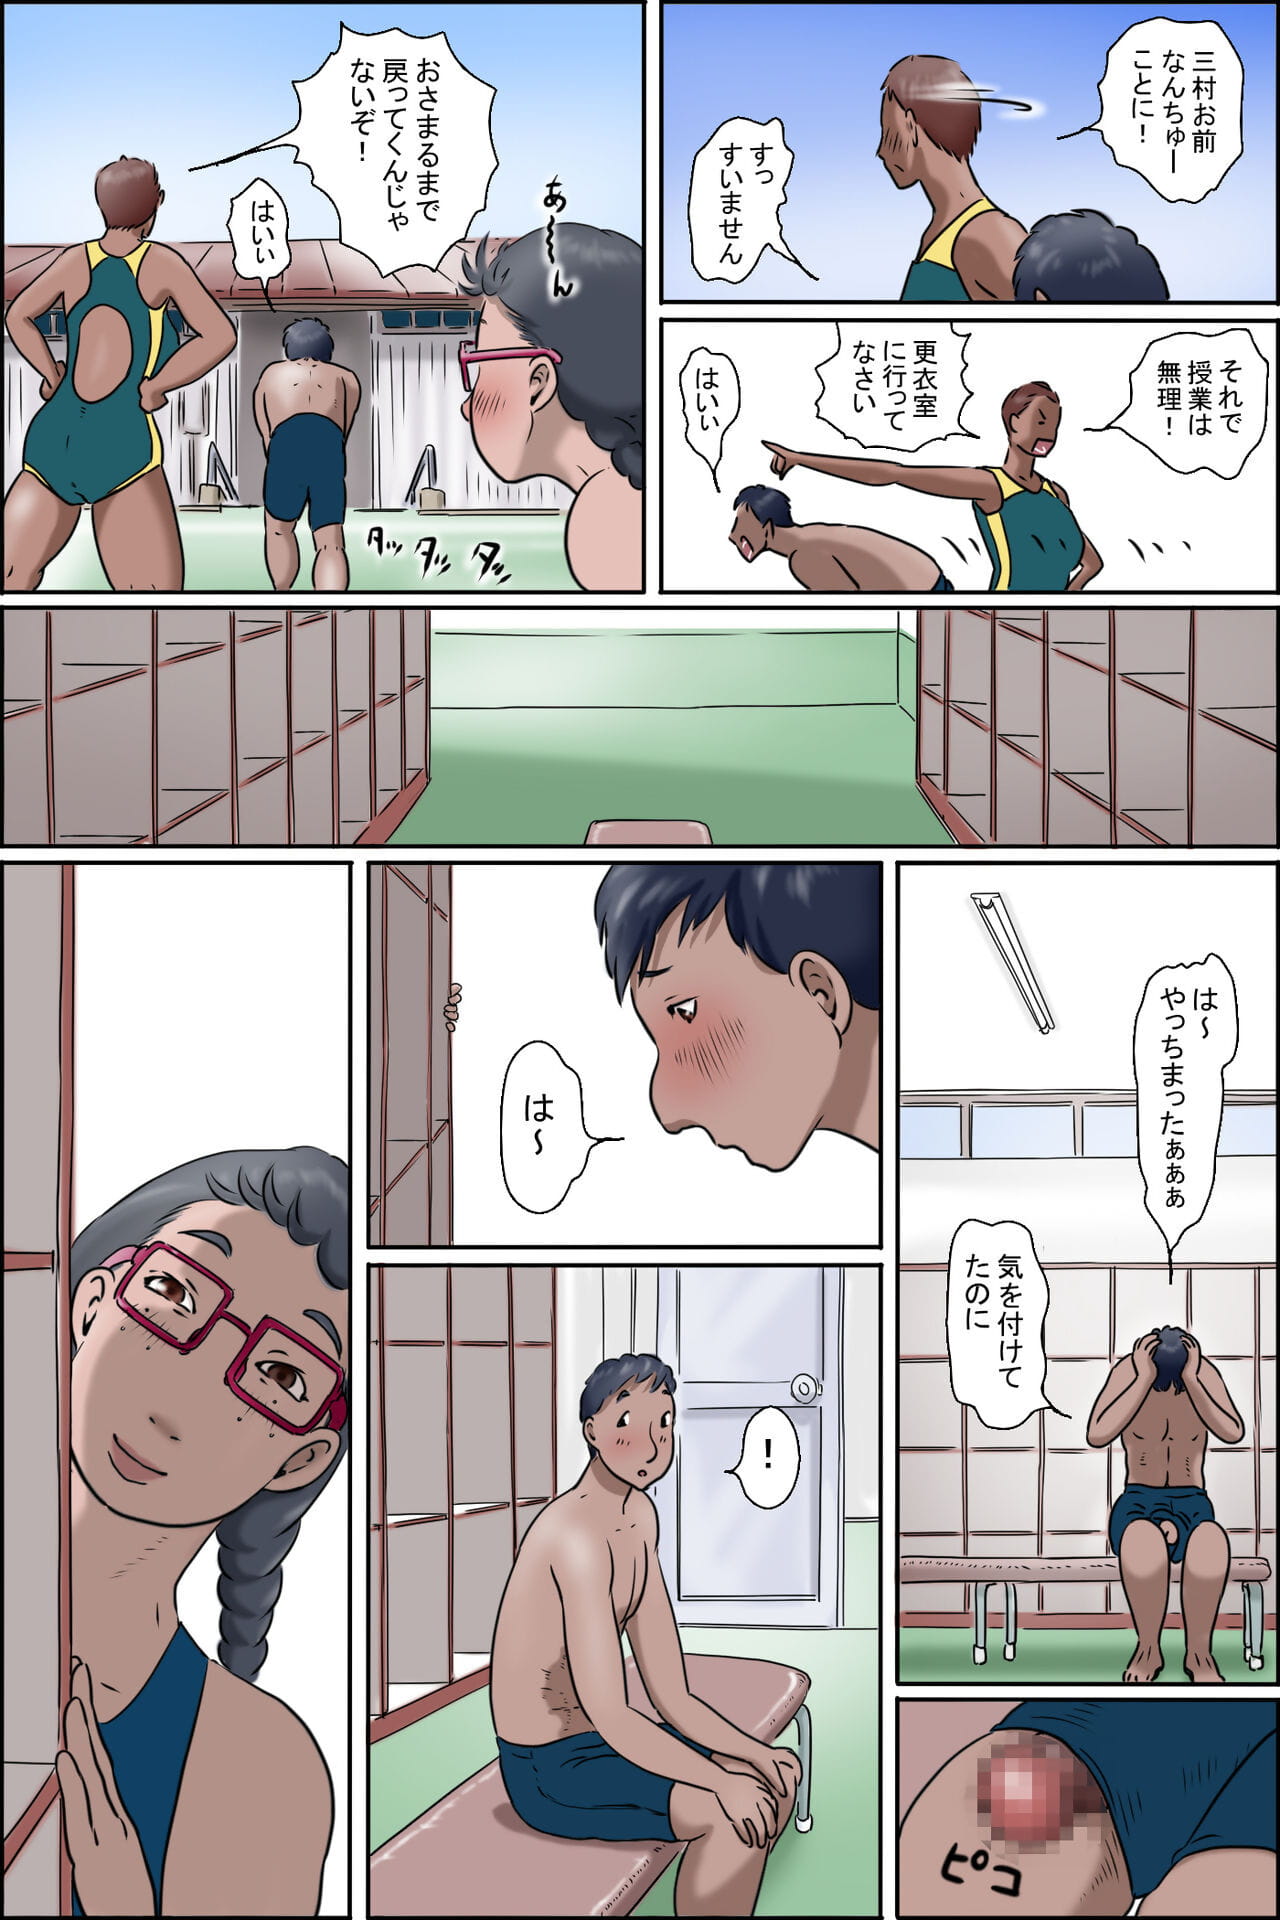 Imouto नी wa makerarenai razoku kazoku choujo मुर्गी page 1